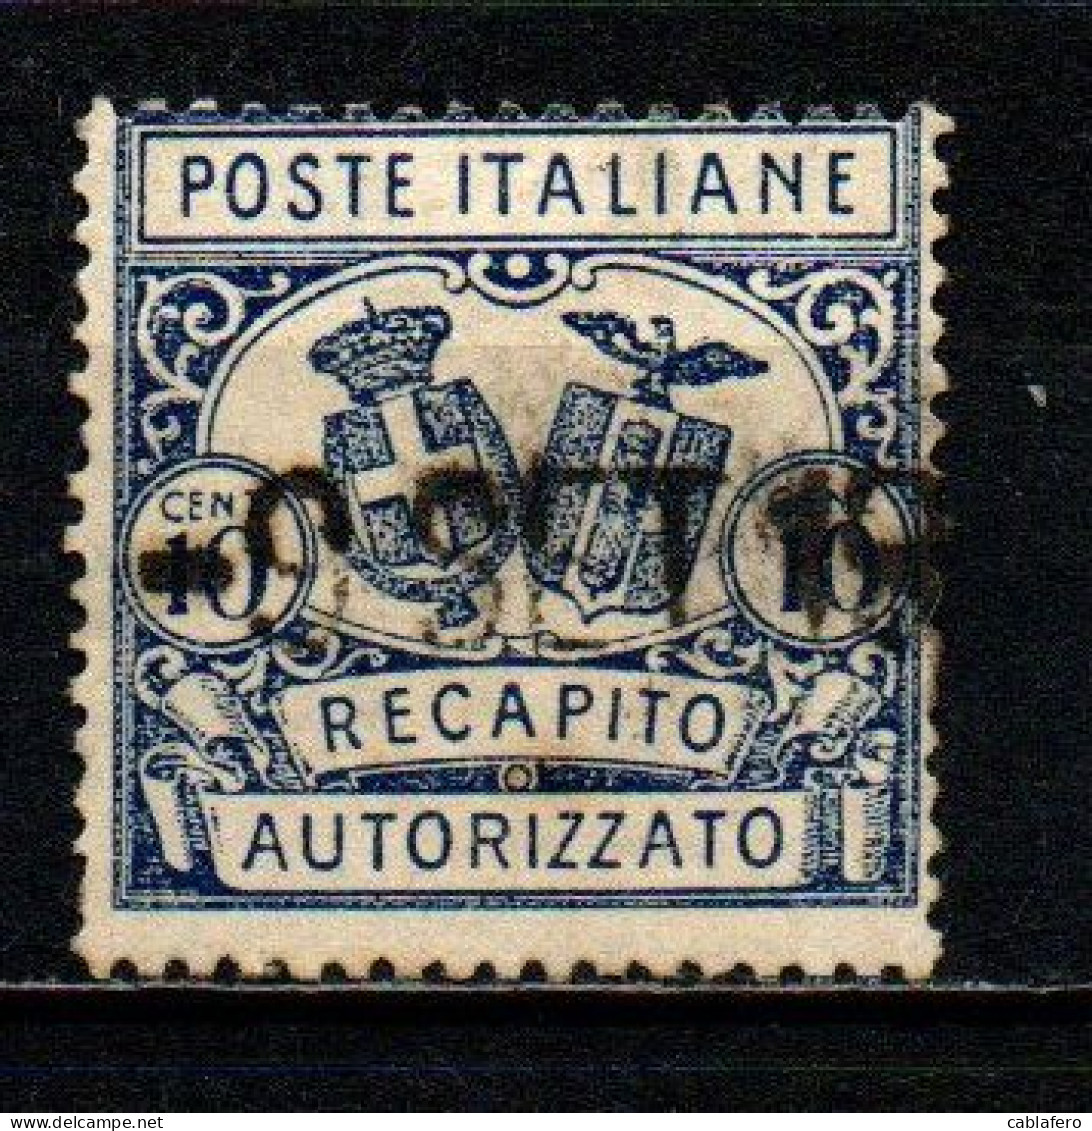 ITALIA REGNO - 1928 - RECAPITO AUTORIZZATO - STEMMI IN OVALE - DENTELLATURA 14 -  USATO - Poste Pneumatique